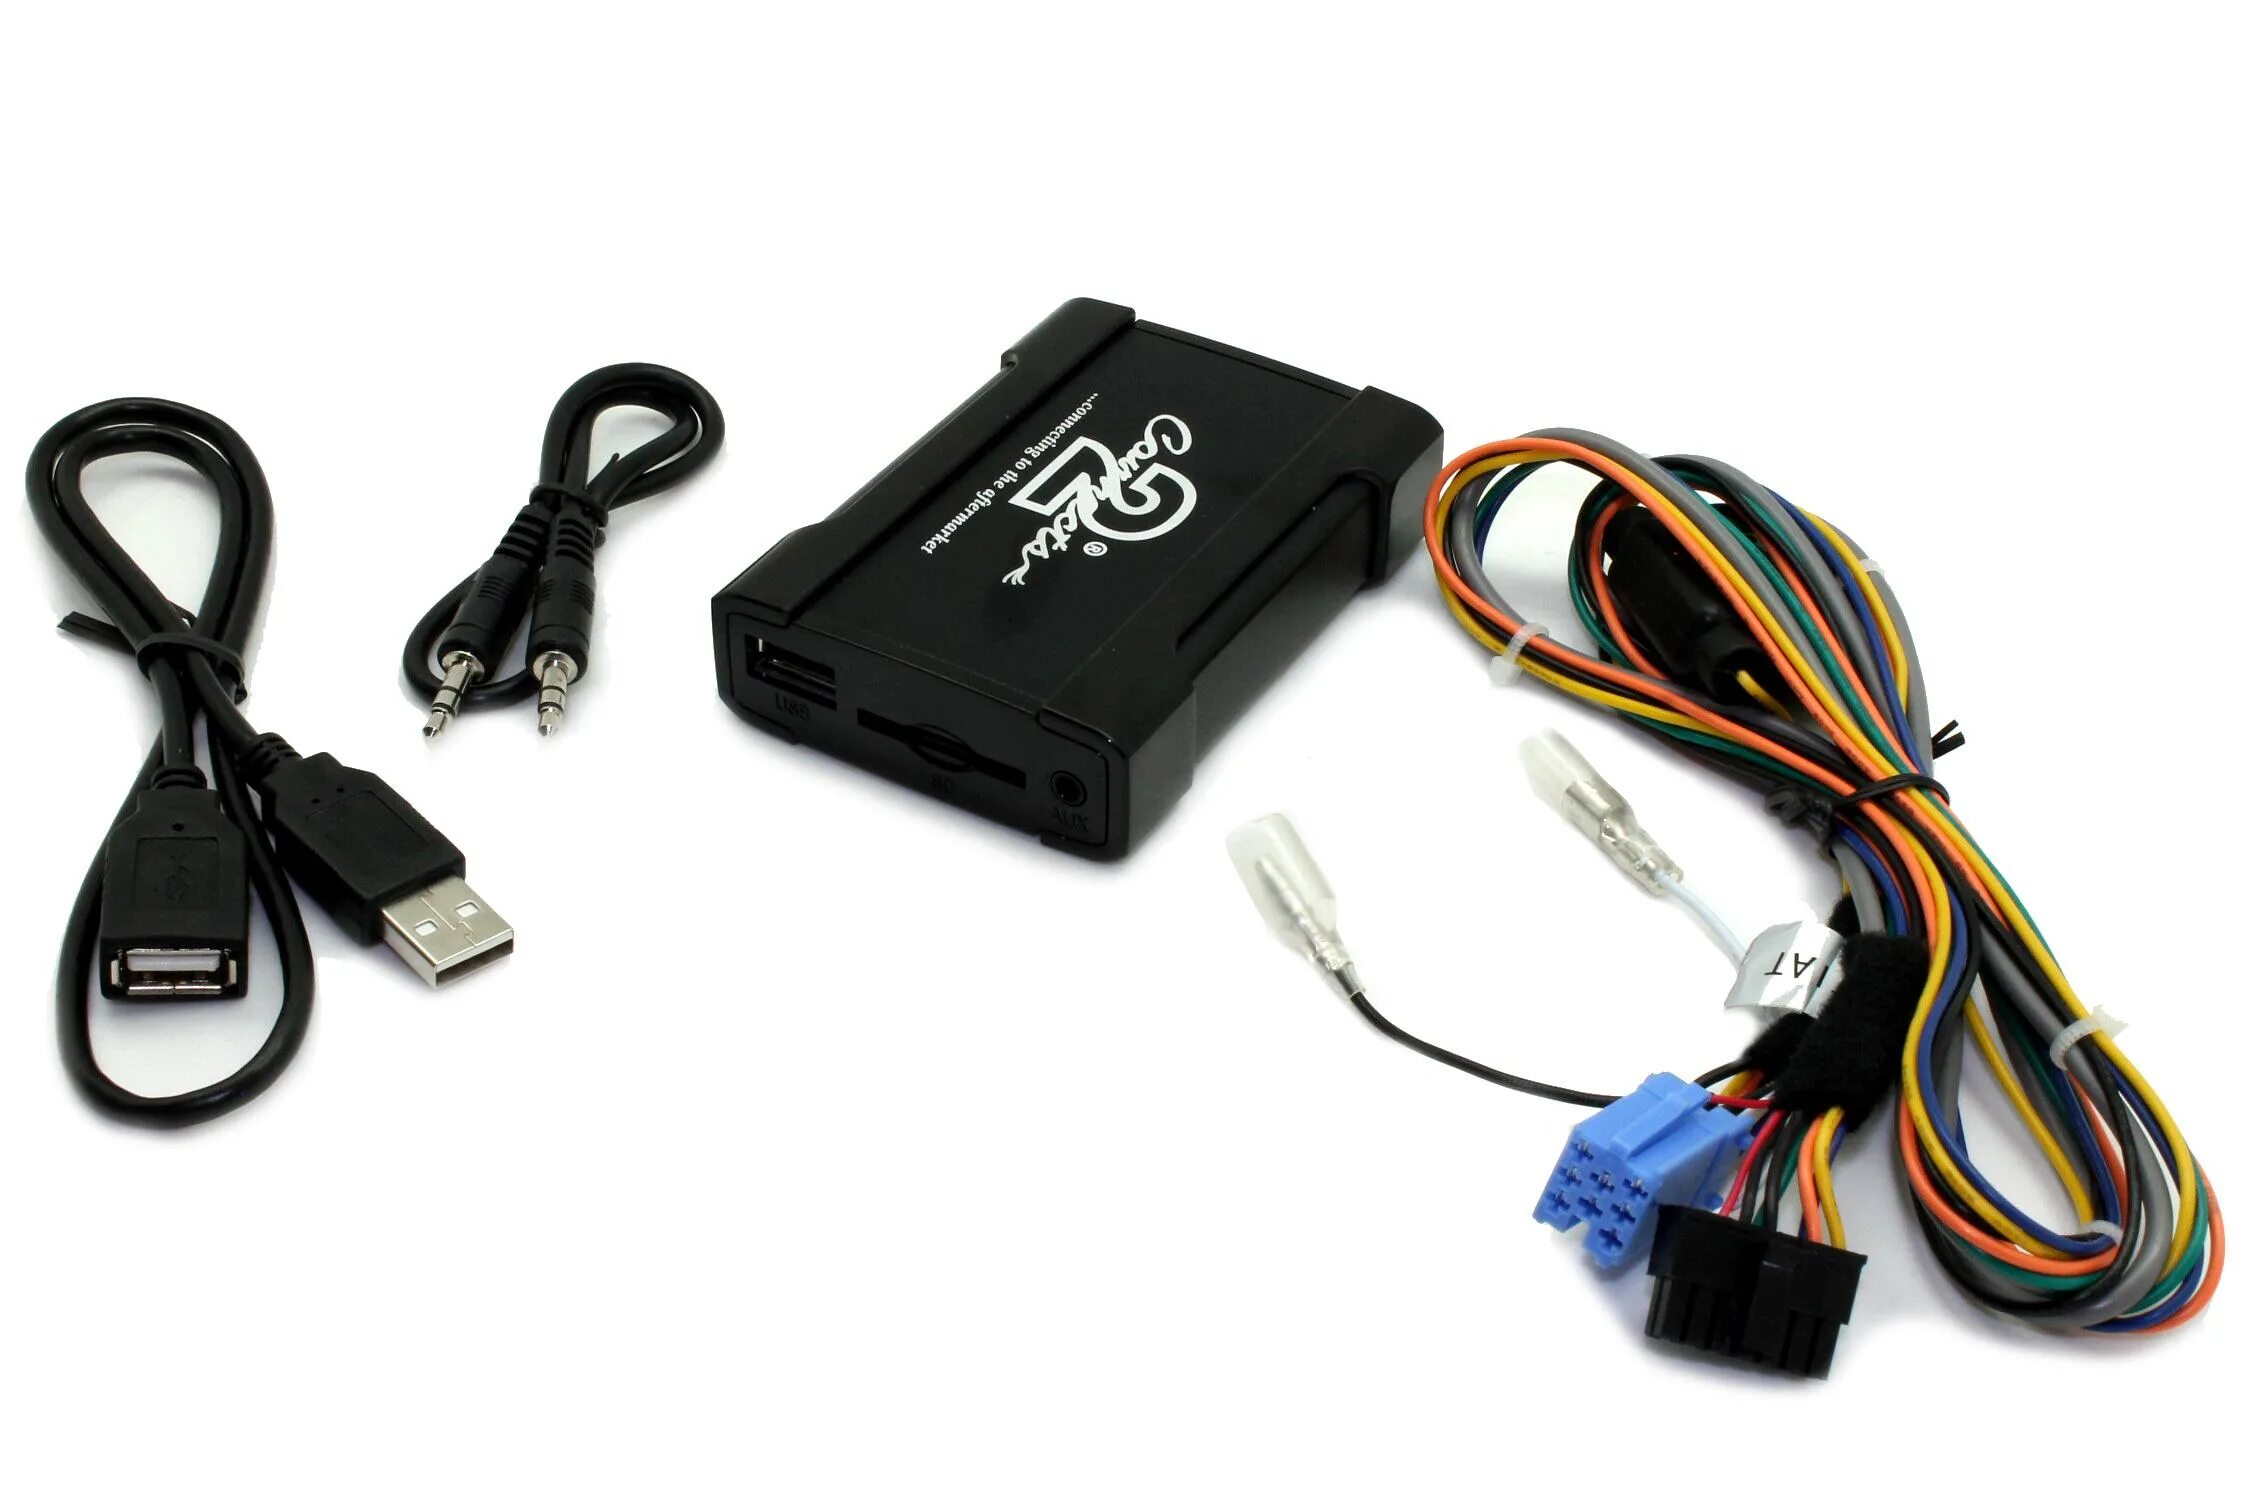 Connecting adapter. USB адаптер connects2. Адаптер для магнитолы Мерседес aux. USB адаптер для магнитолы SD Card. USB адаптер для штатной магнитолы Peugeot 107.